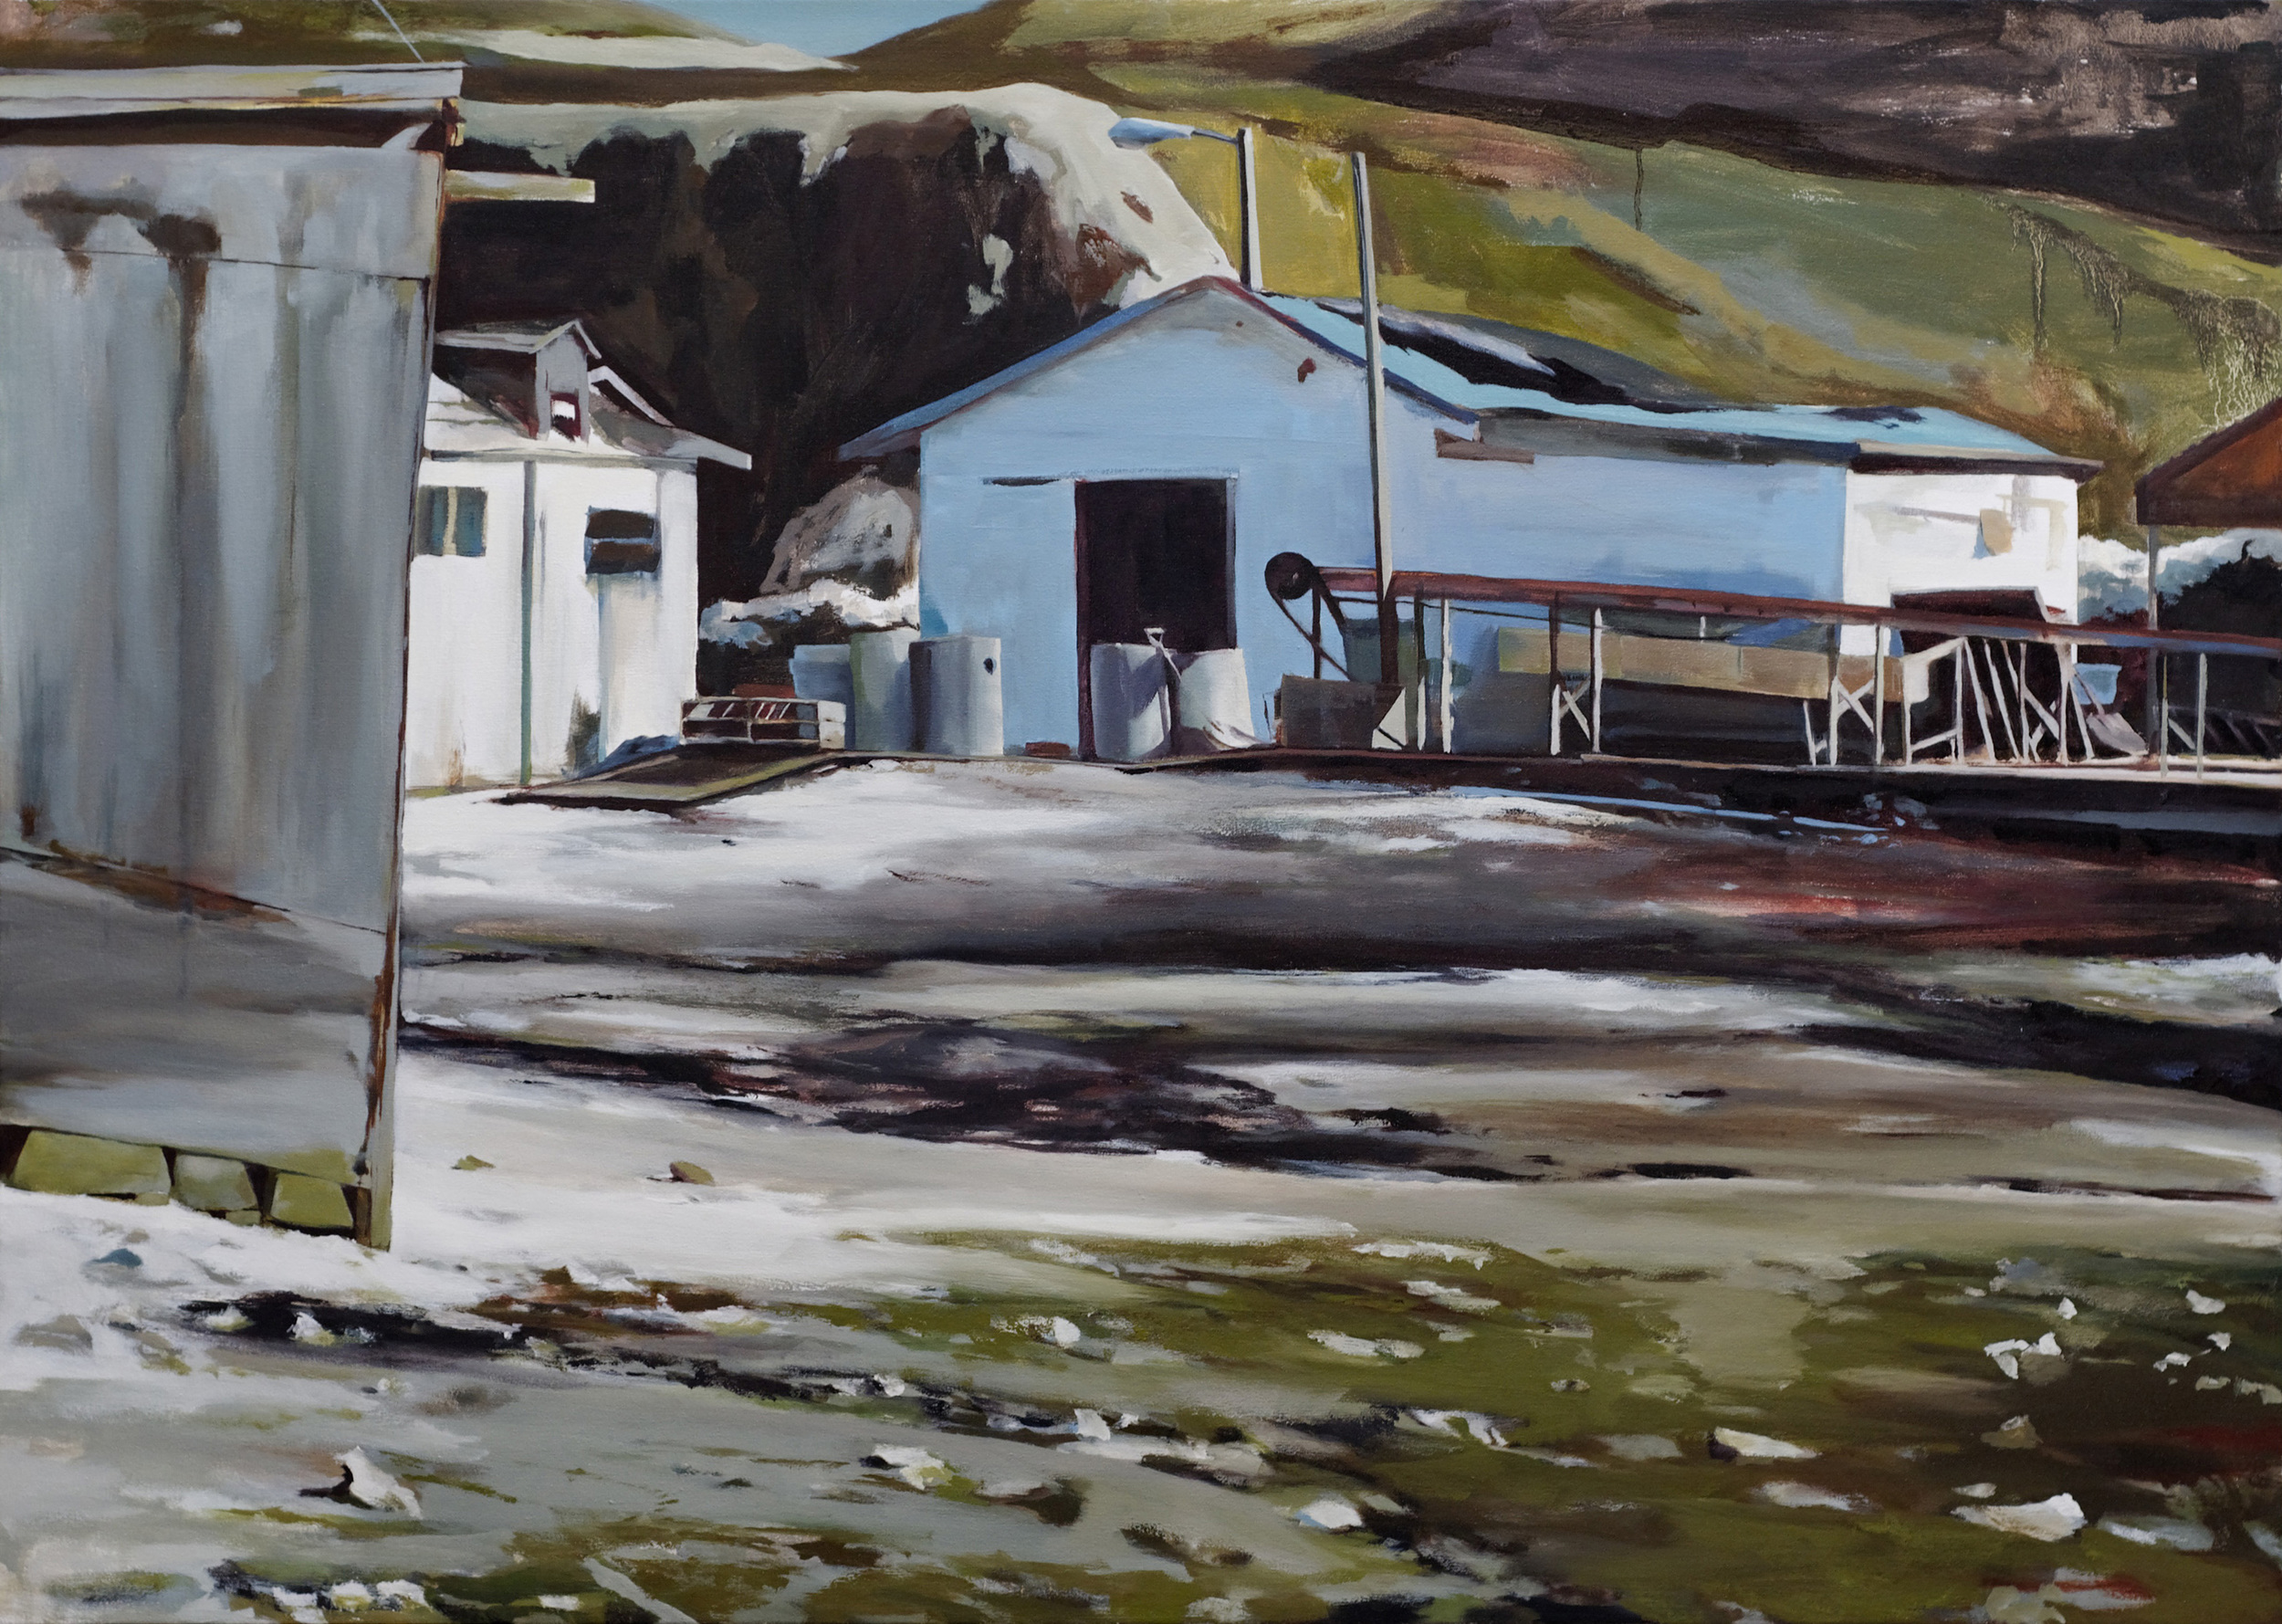   oyster farm&nbsp;&nbsp; •  45" x 64"  oil on canvas  2008    